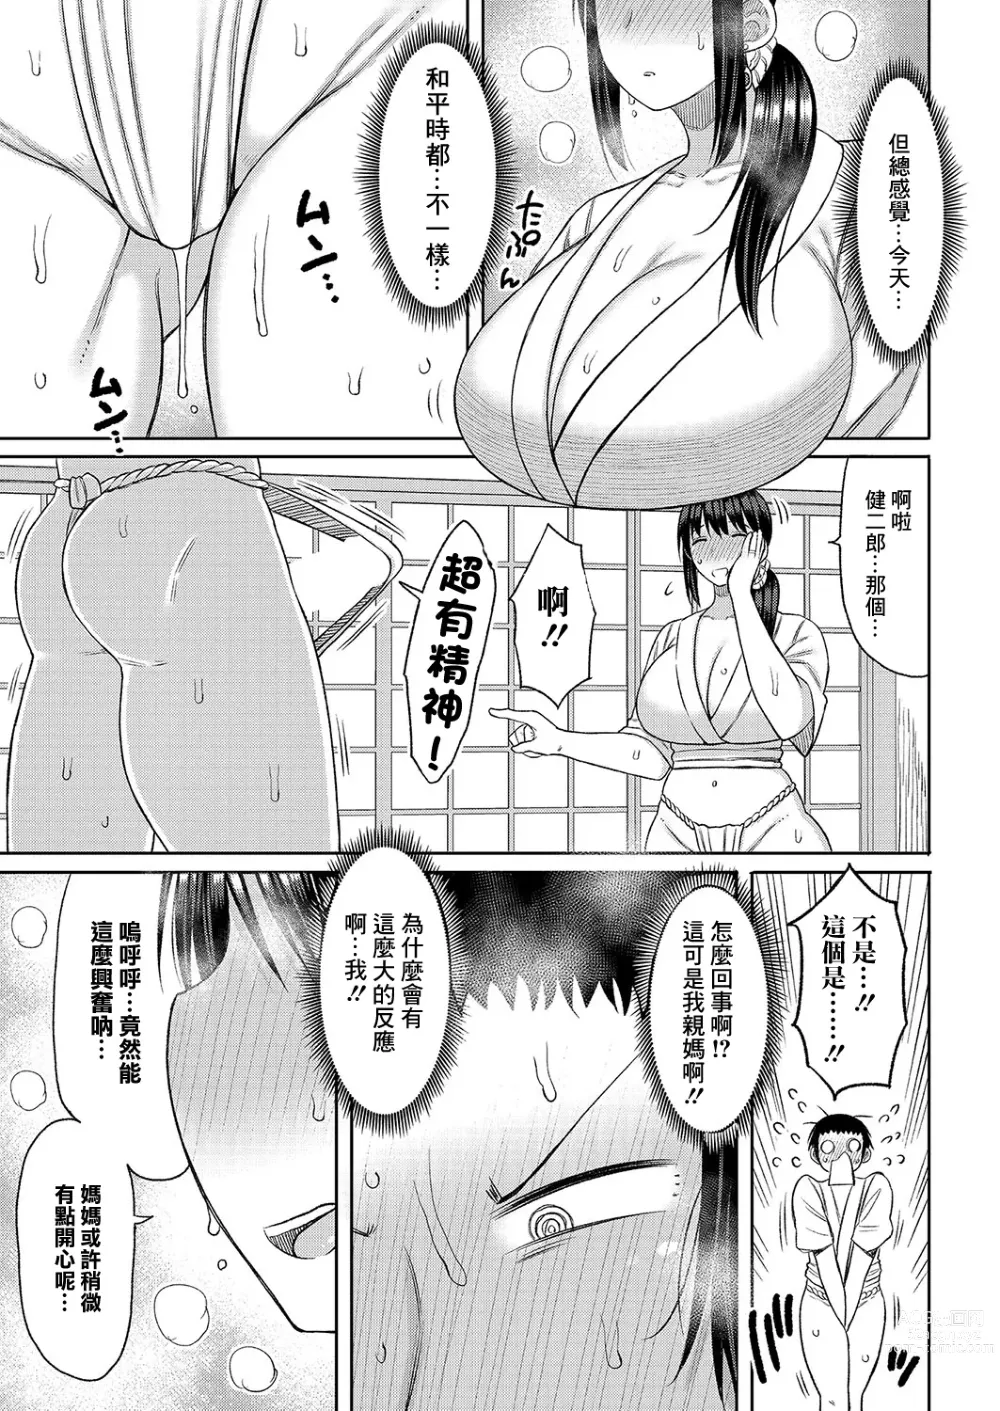 Page 7 of manga Kono Mura ni wa Haha ga Musuko ni Sex o Oshieru Shikitari ga Arimasu